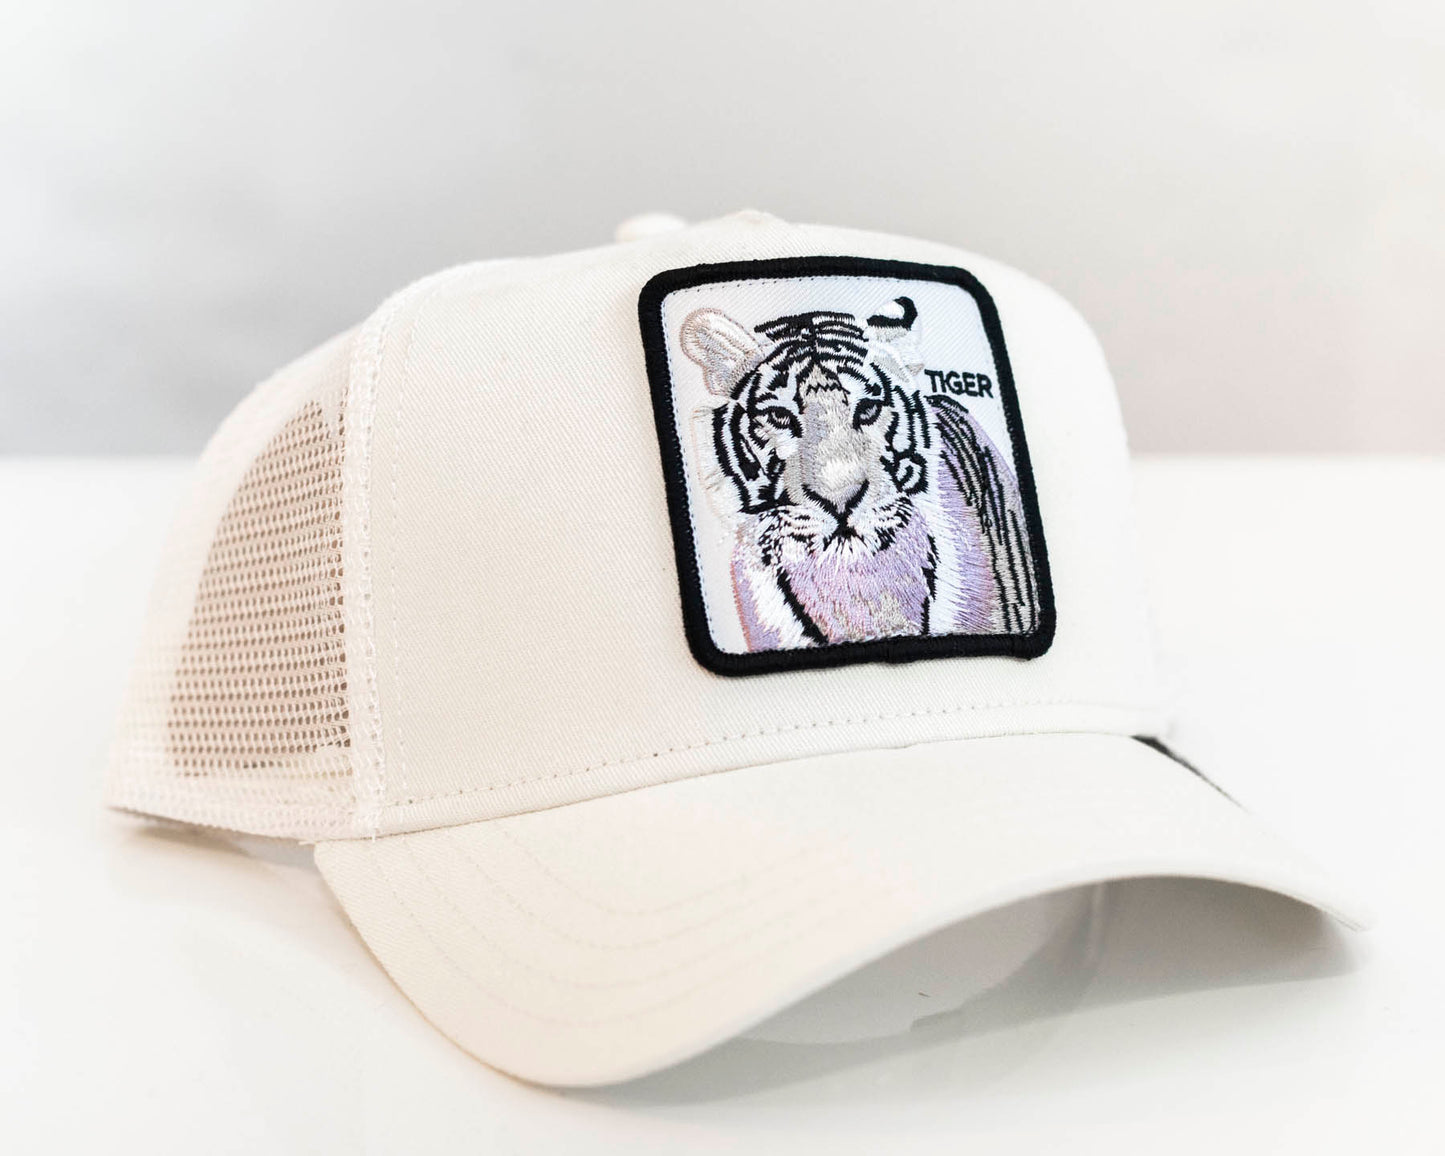 The White Tiger Trucker Hat - Goorin Bros